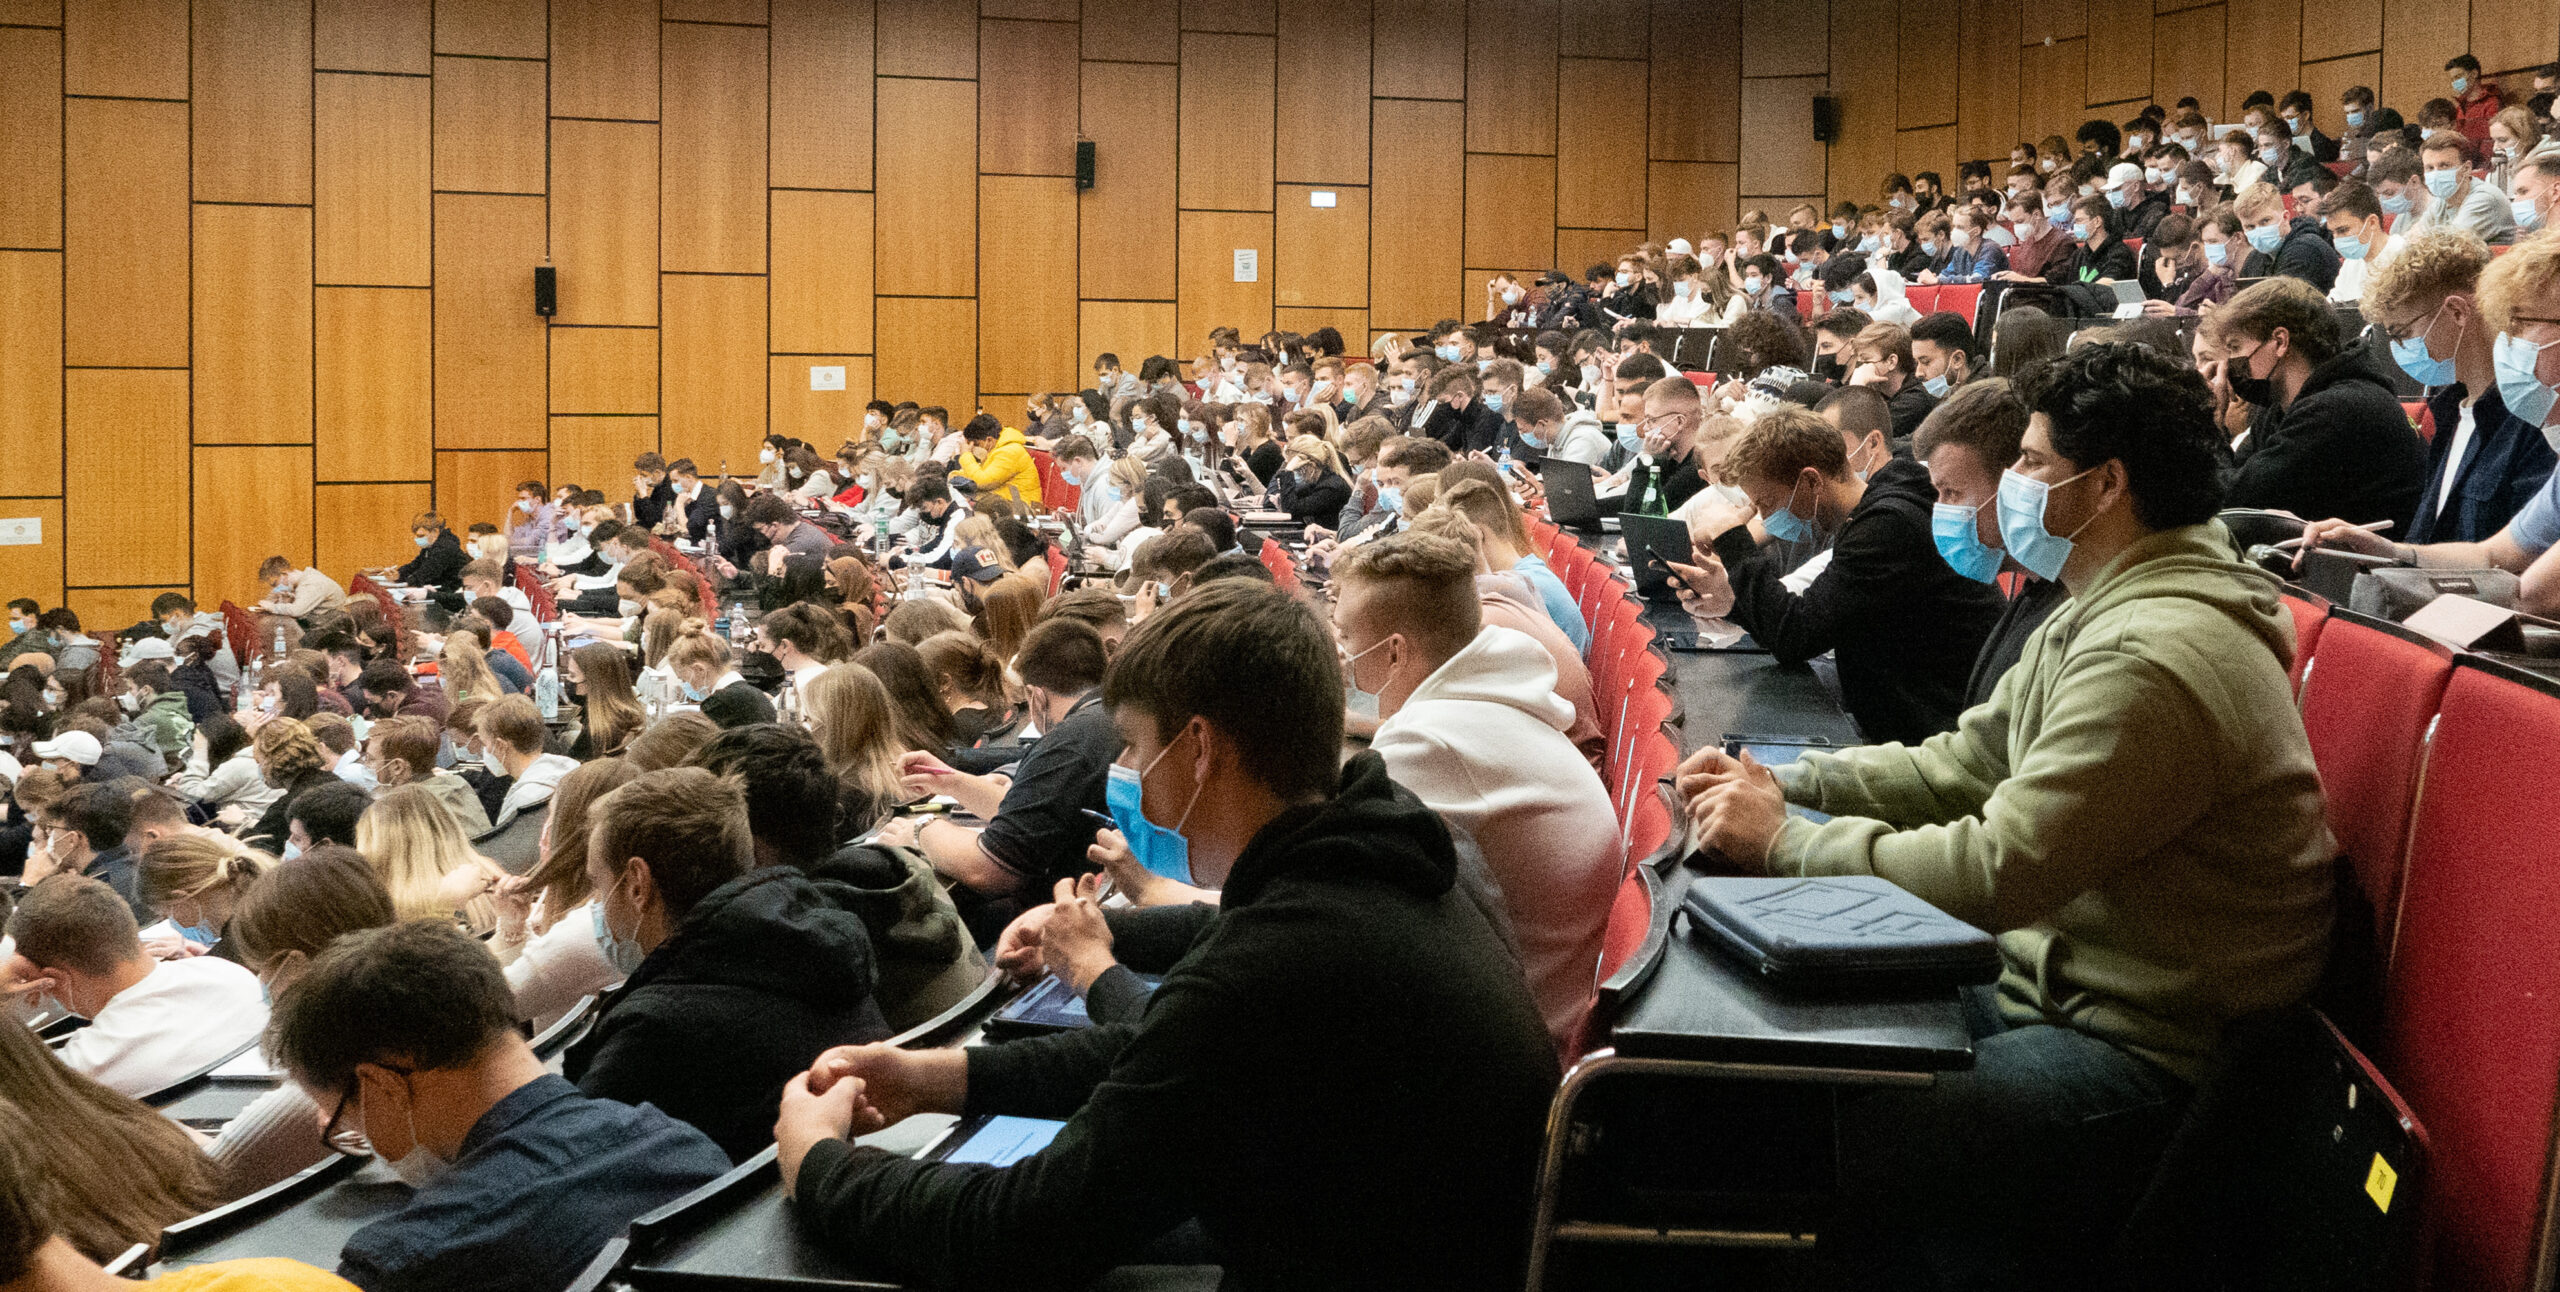 Studenten sitzen währen einer Vorlesung in einem Hörsaal